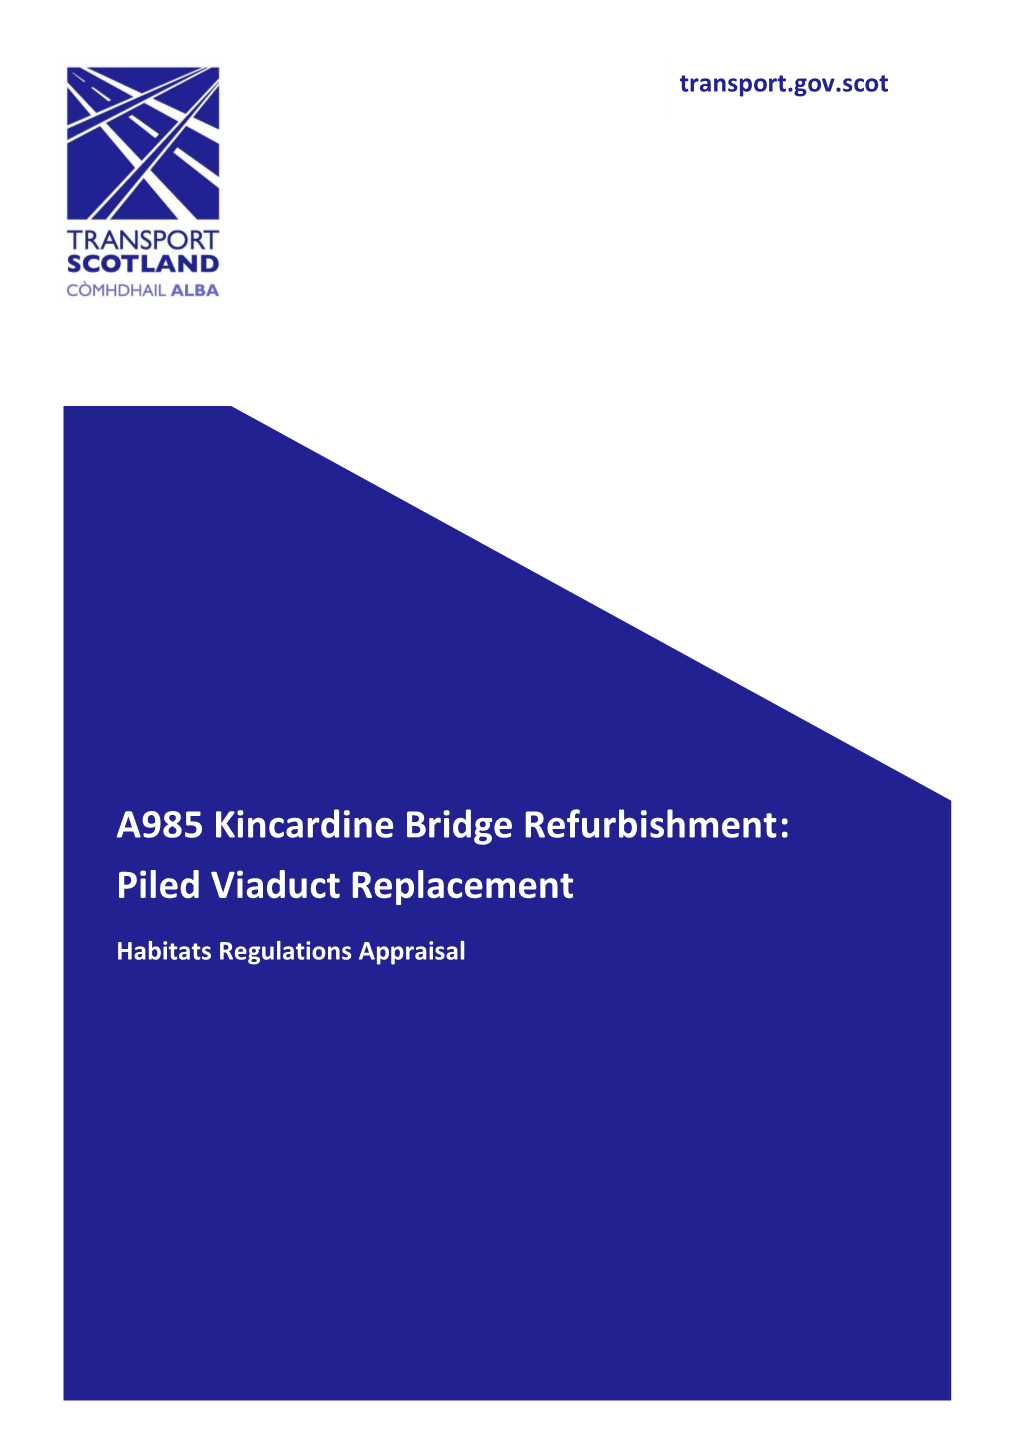 A985 Kincardine Bridge Refurbishment